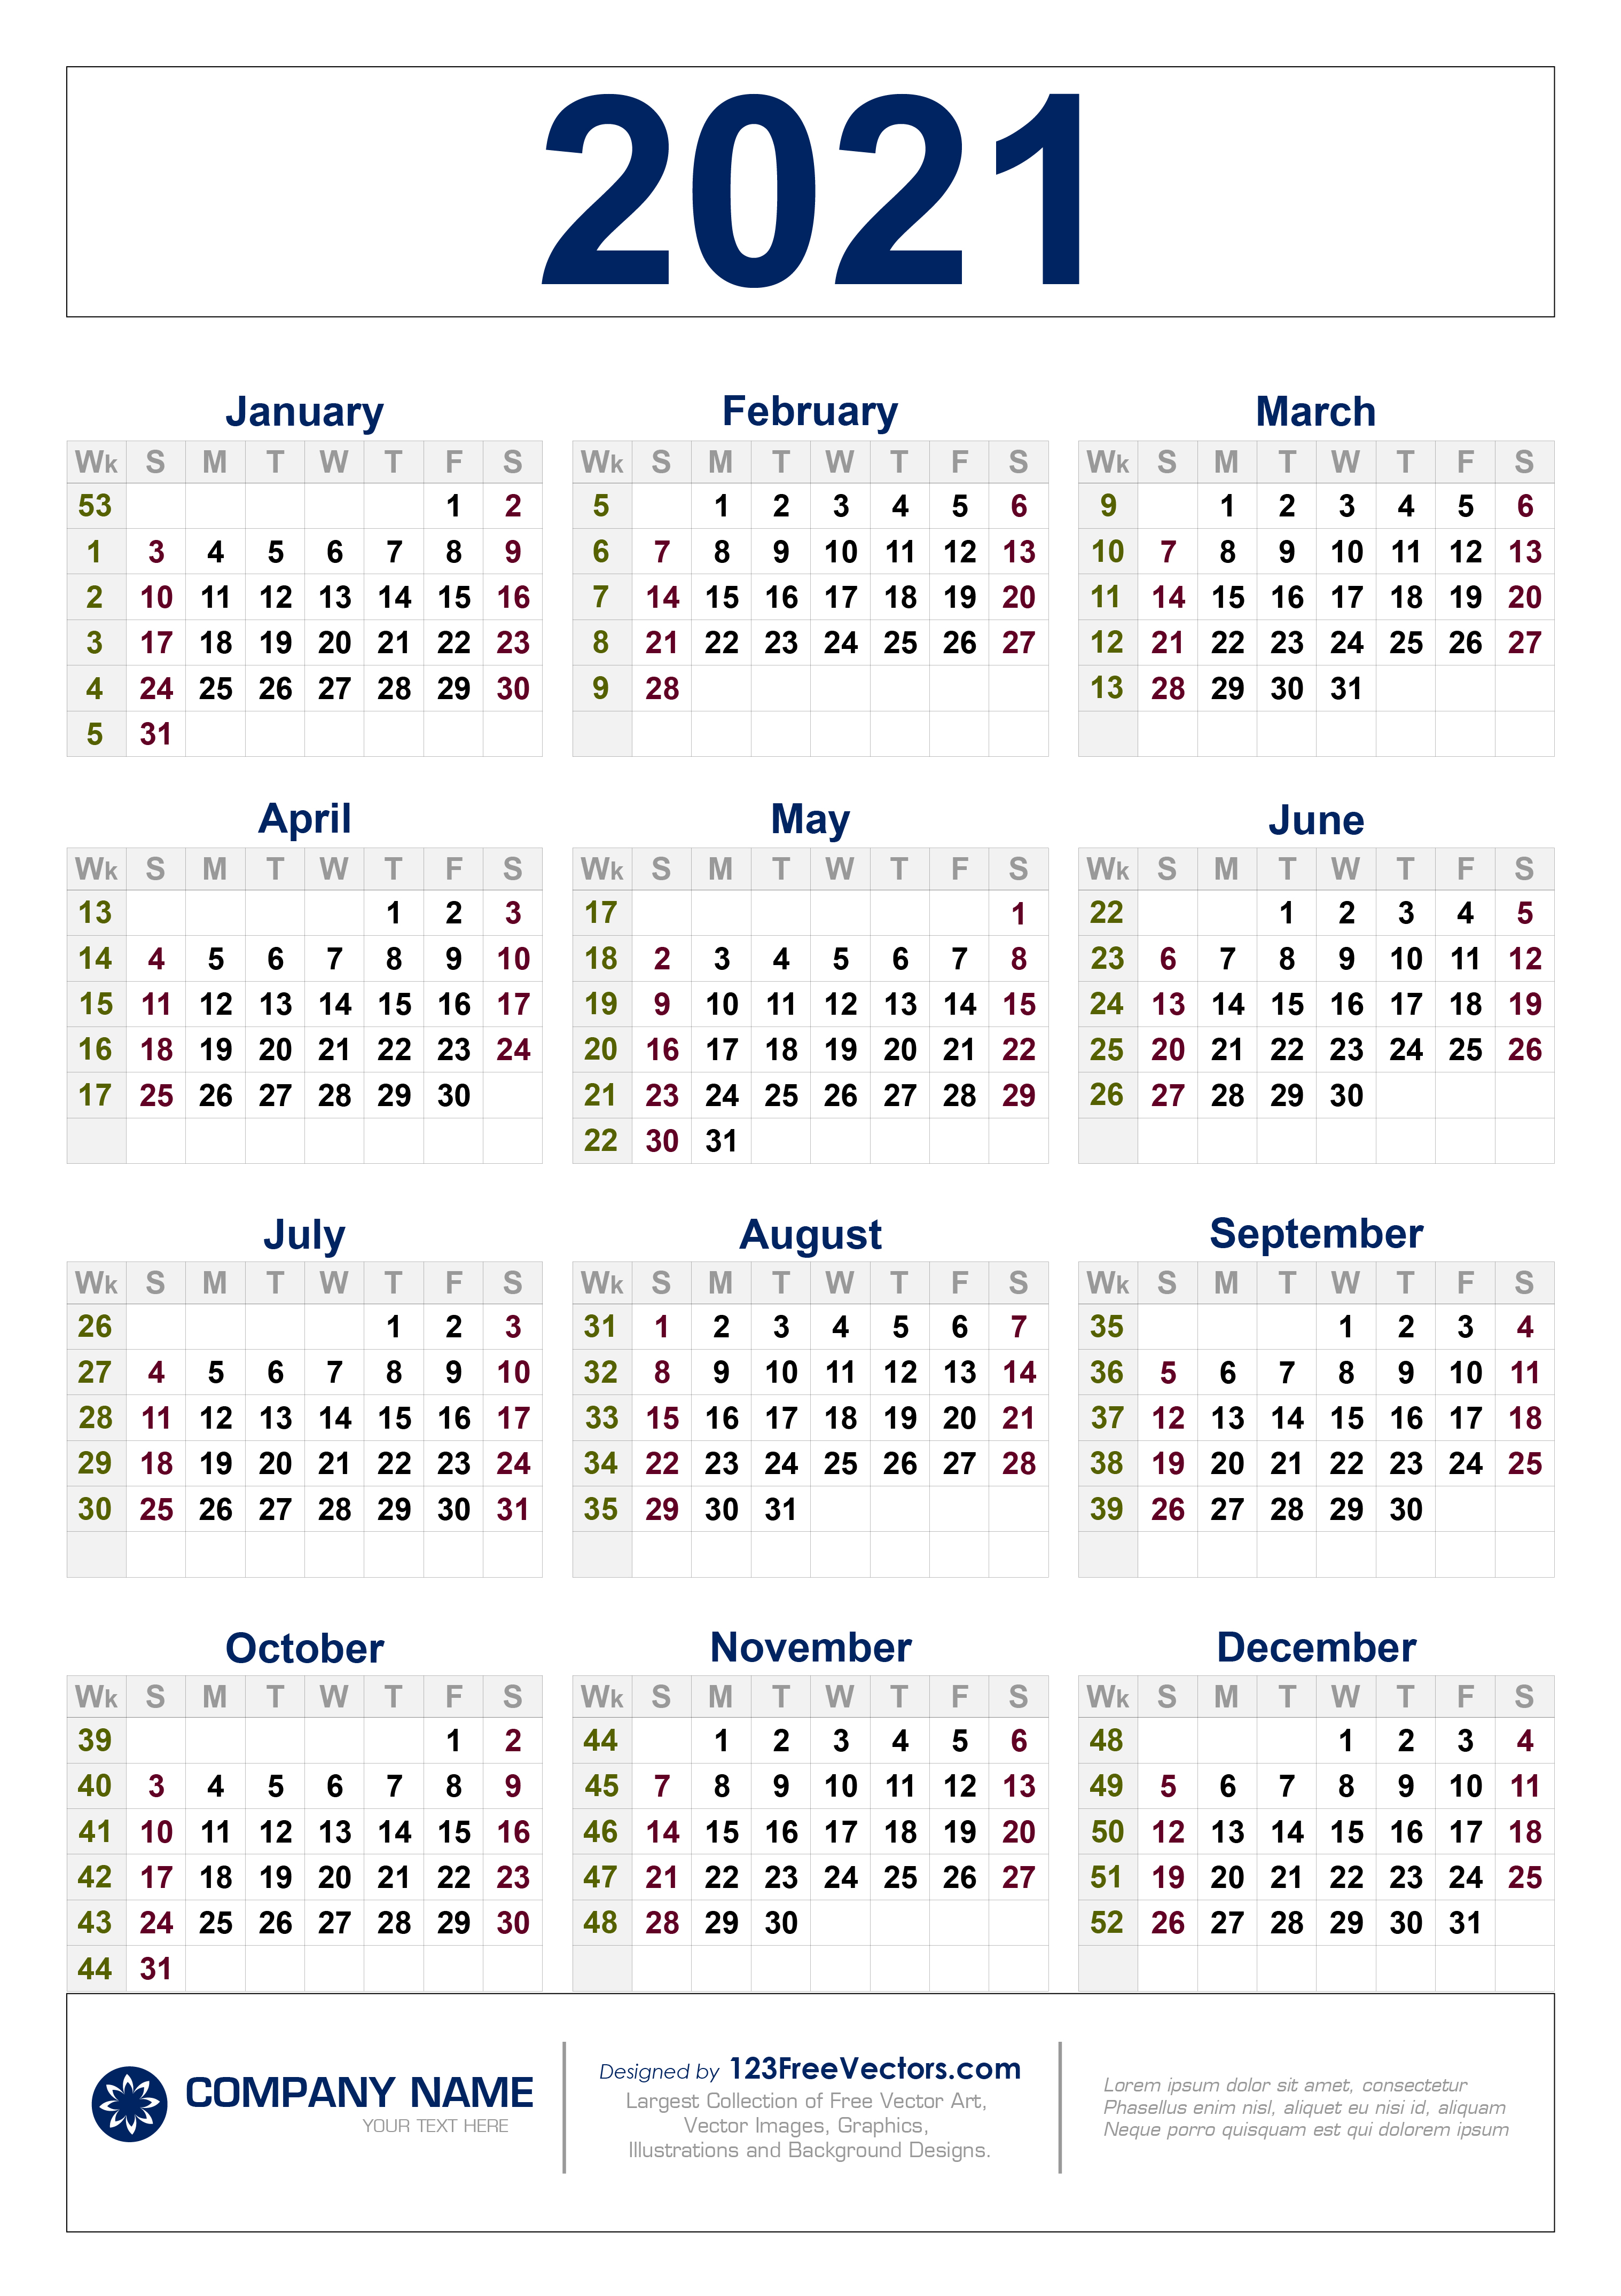 Work Week Calendar 2021 Free Free Download 2021 Calendar with Week Numbers